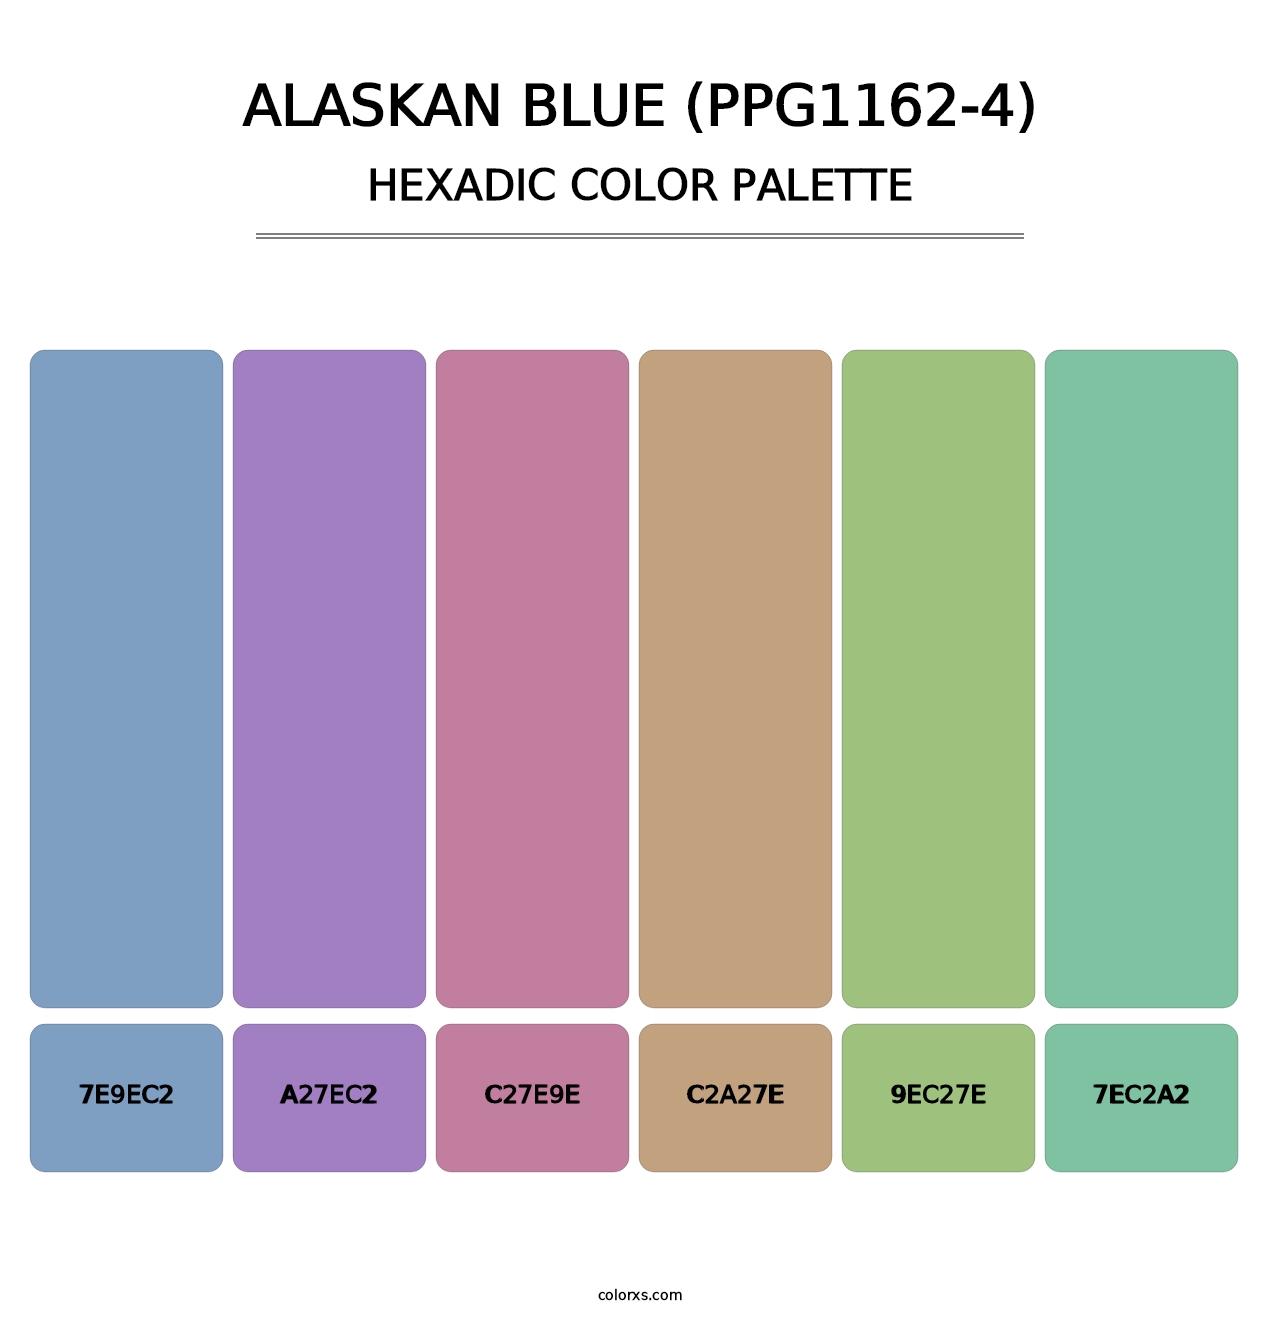 Alaskan Blue (PPG1162-4) - Hexadic Color Palette